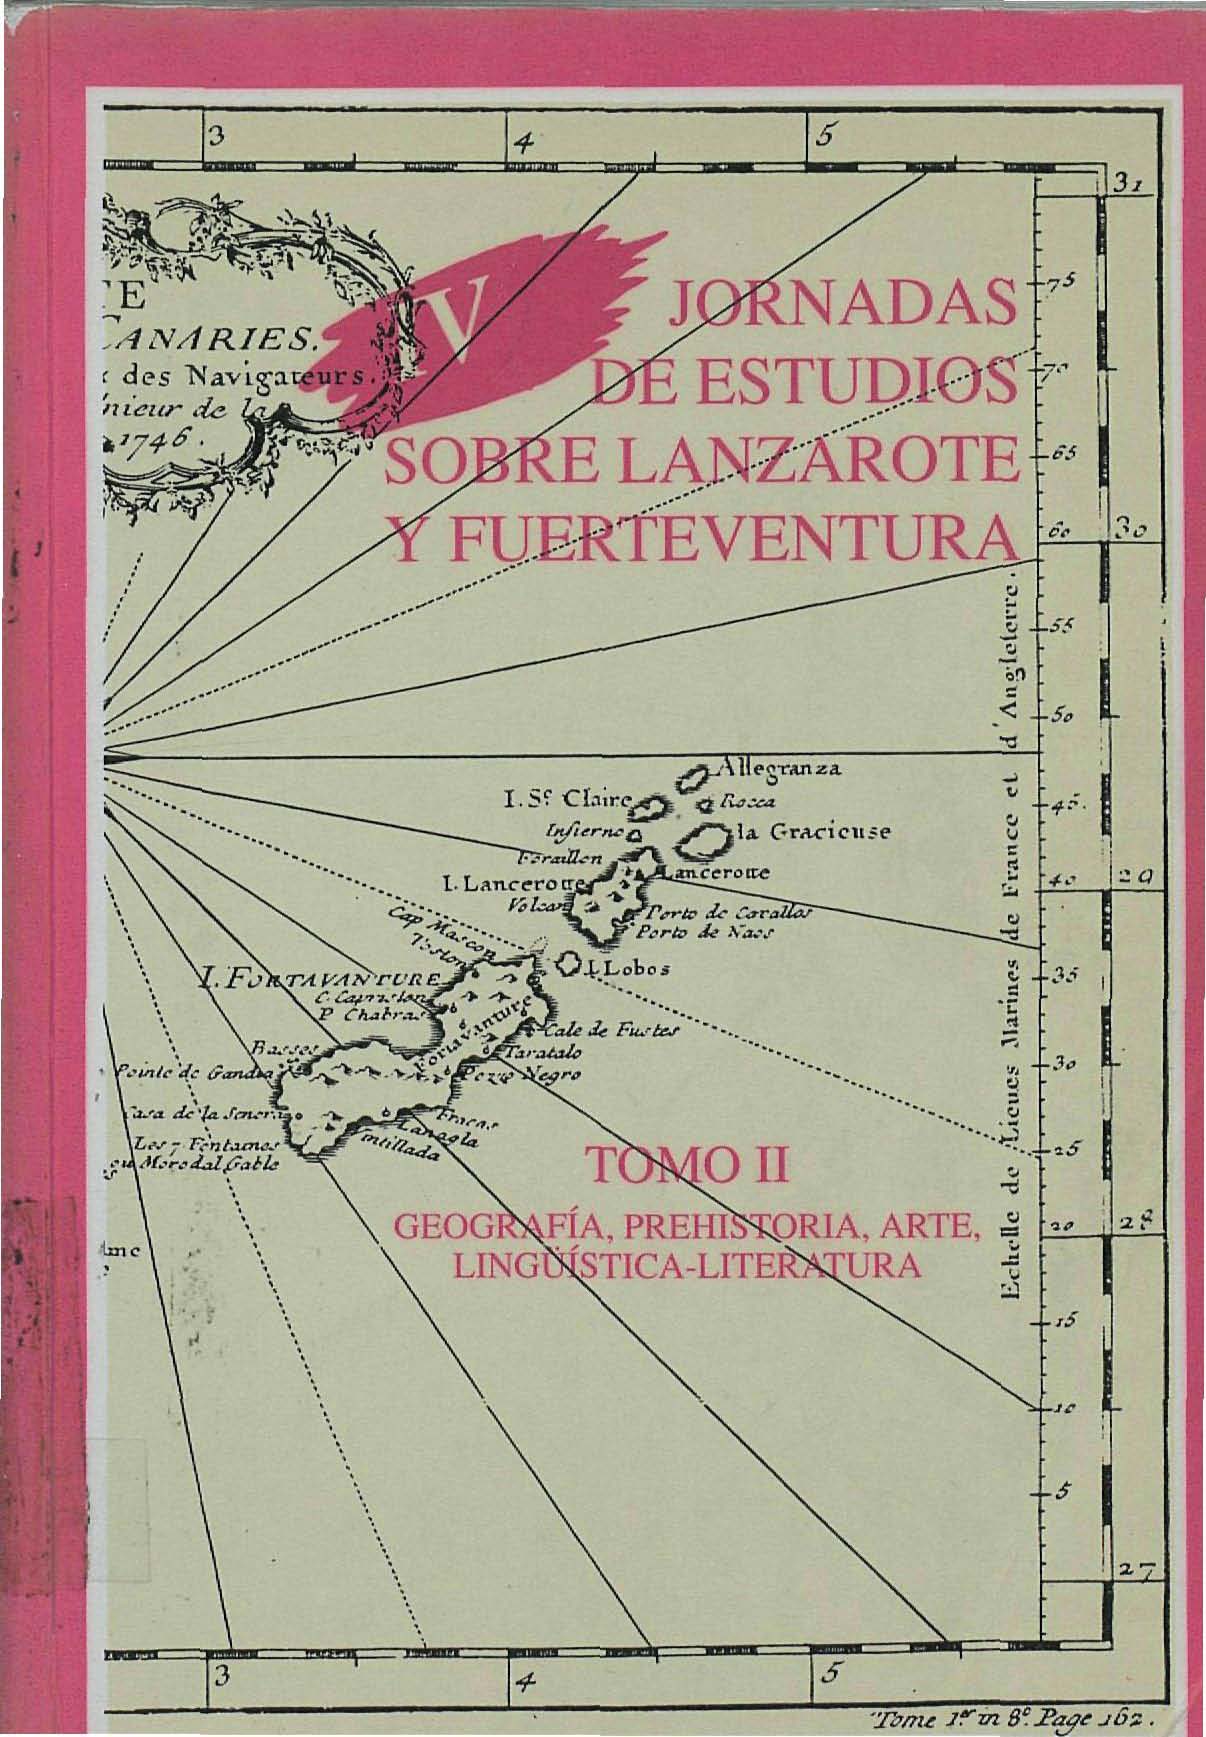 Estudio de las lluvias torrenciales acaecidas en febrero de 1989 en Lanzarote